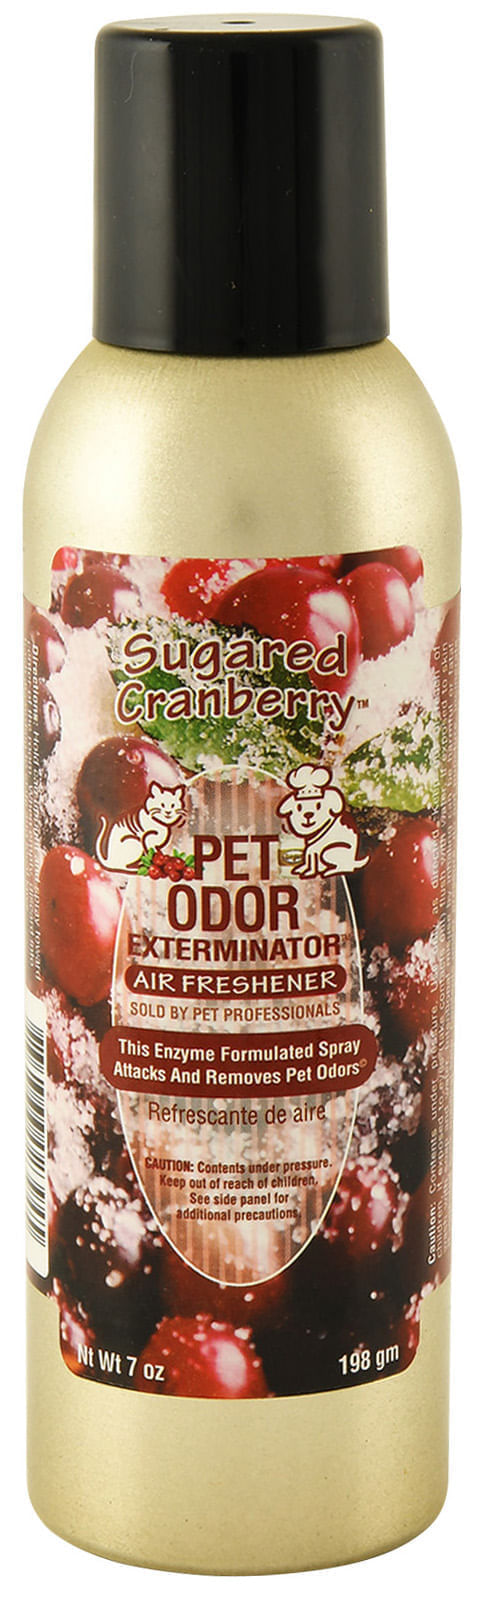 Pet-Odor-Exterminator-Spray-Sugared-Cranberry